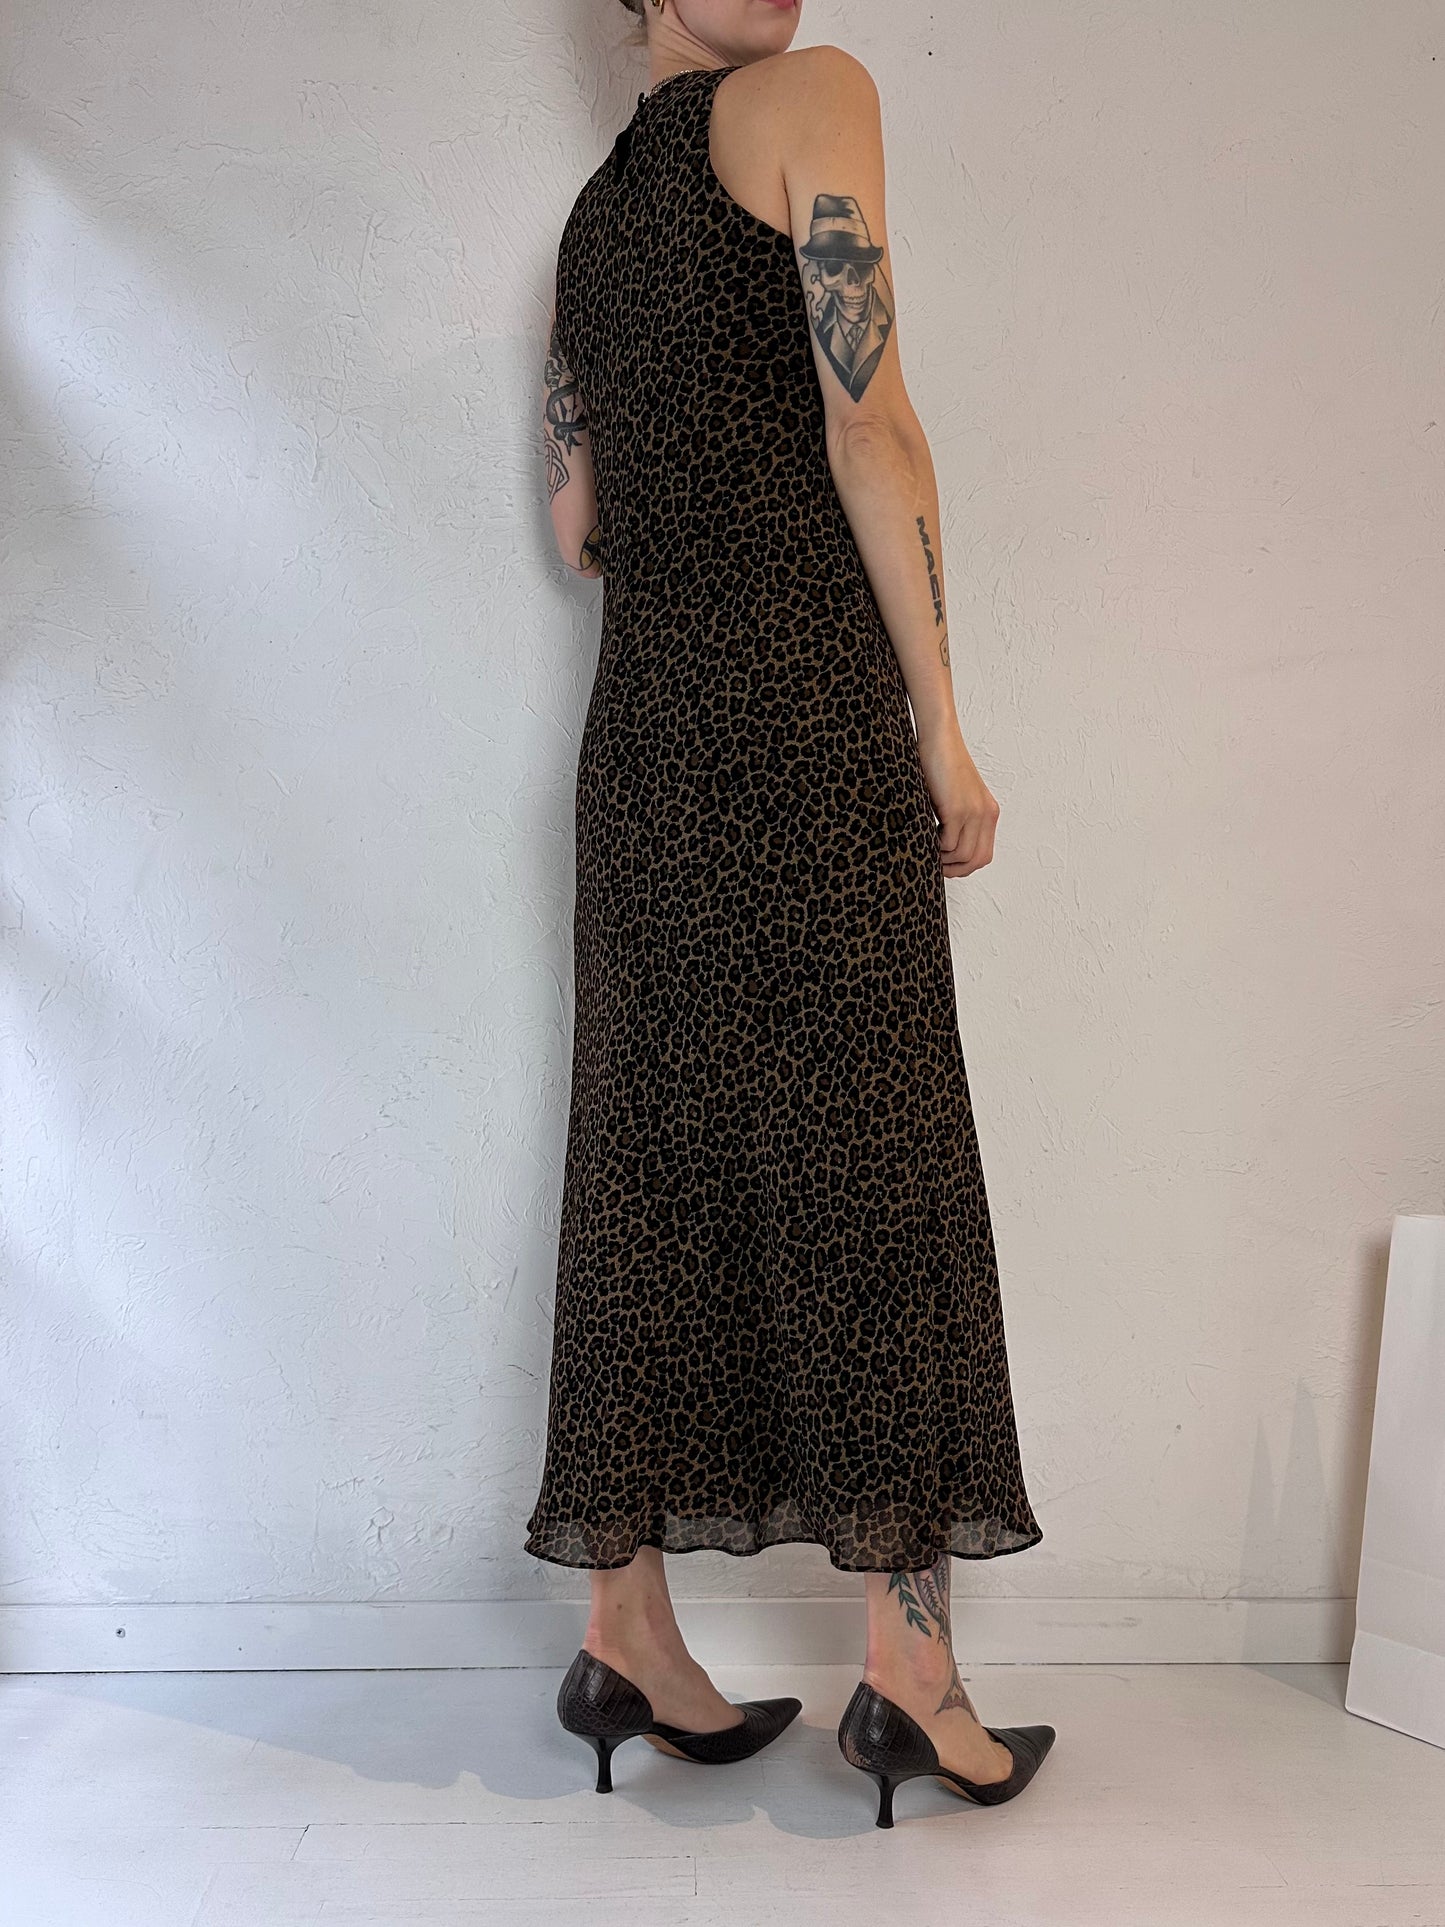 90s 'Jones Wear' Leopard Print Dress / Small - Medium